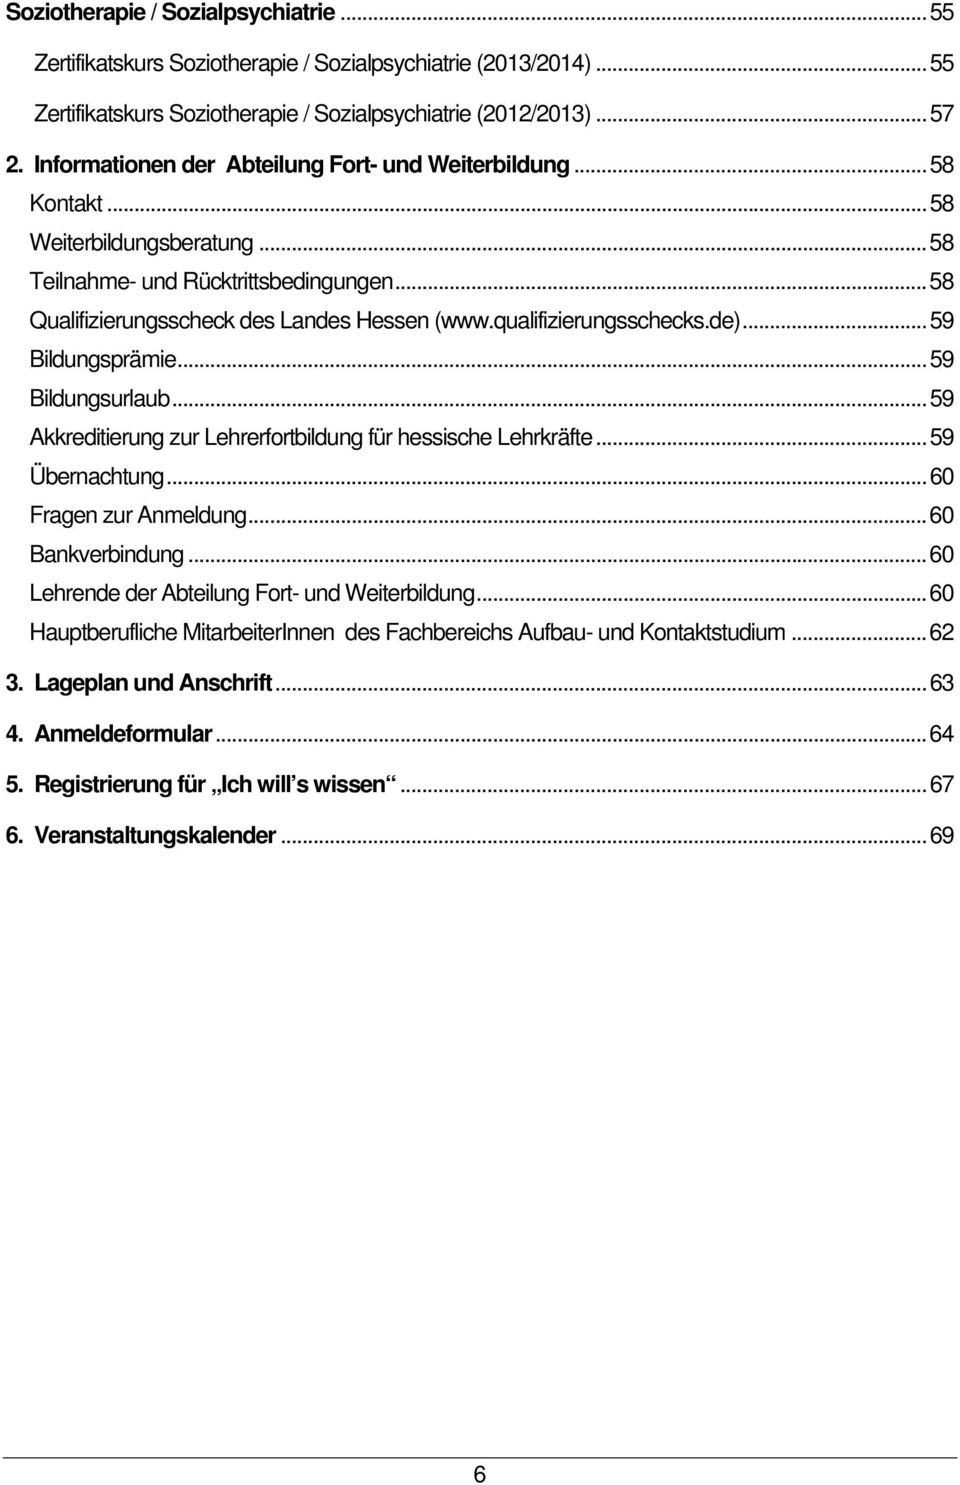 qualifizierungsschecks.de)... 59 Bildungsprämie... 59 Bildungsurlaub... 59 Akkreditierung zur Lehrerfortbildung für hessische Lehrkräfte... 59 Übernachtung... 60 Fragen zur Anmeldung.